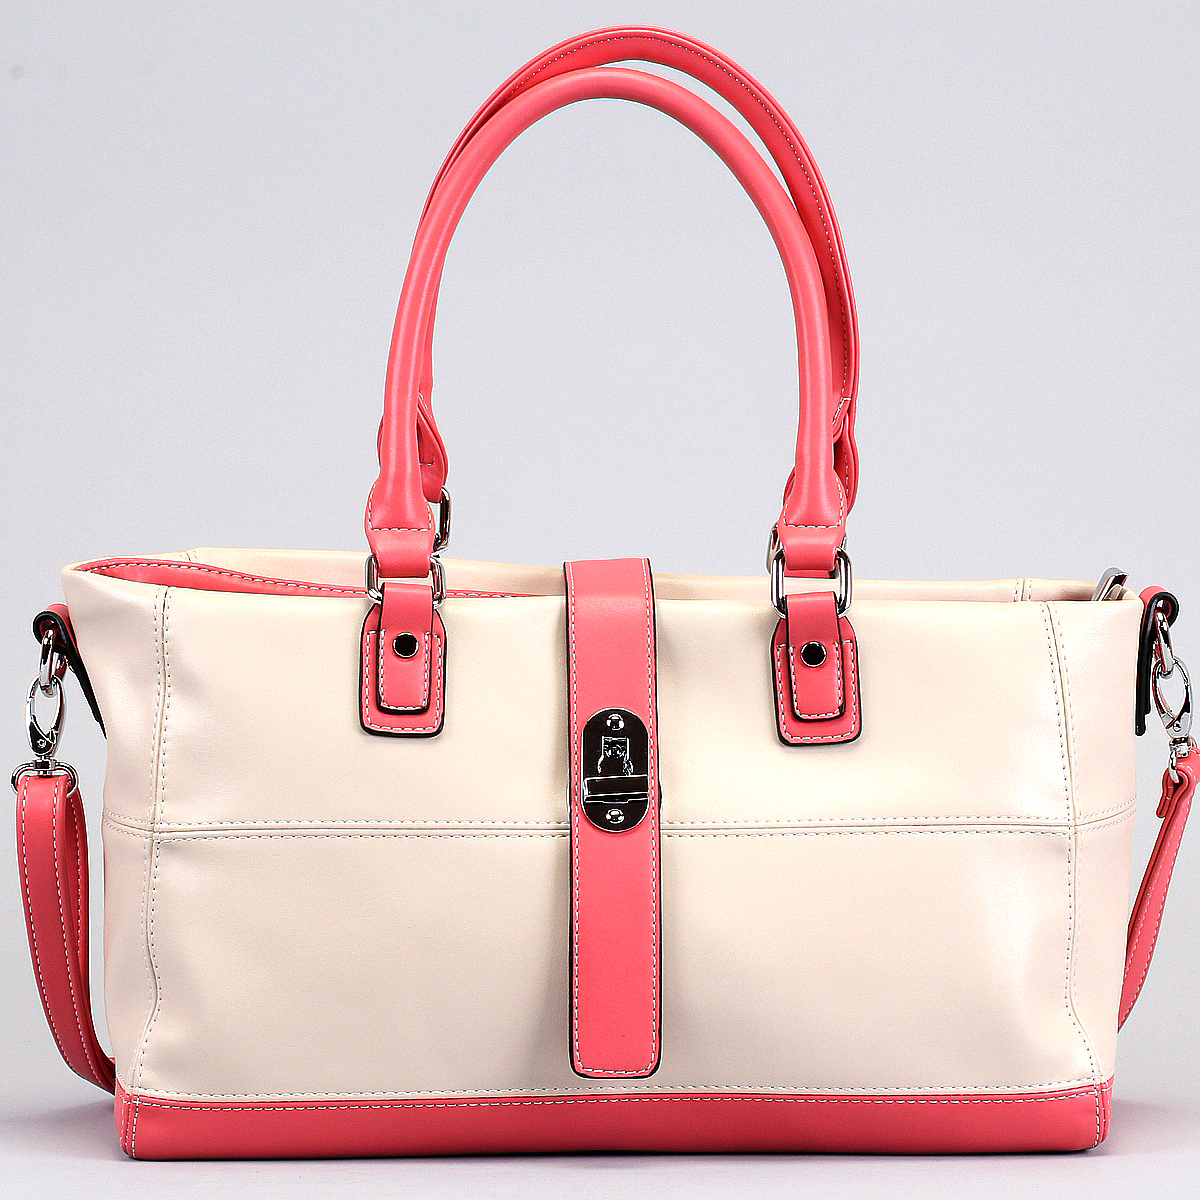 Сумка женская "Leighton", цвет: бежевый, розовый. 10639-082/11/082/27 - купить фирменную сумку по доступной цене с доставкой на дом в интернет магазине OZON.ru